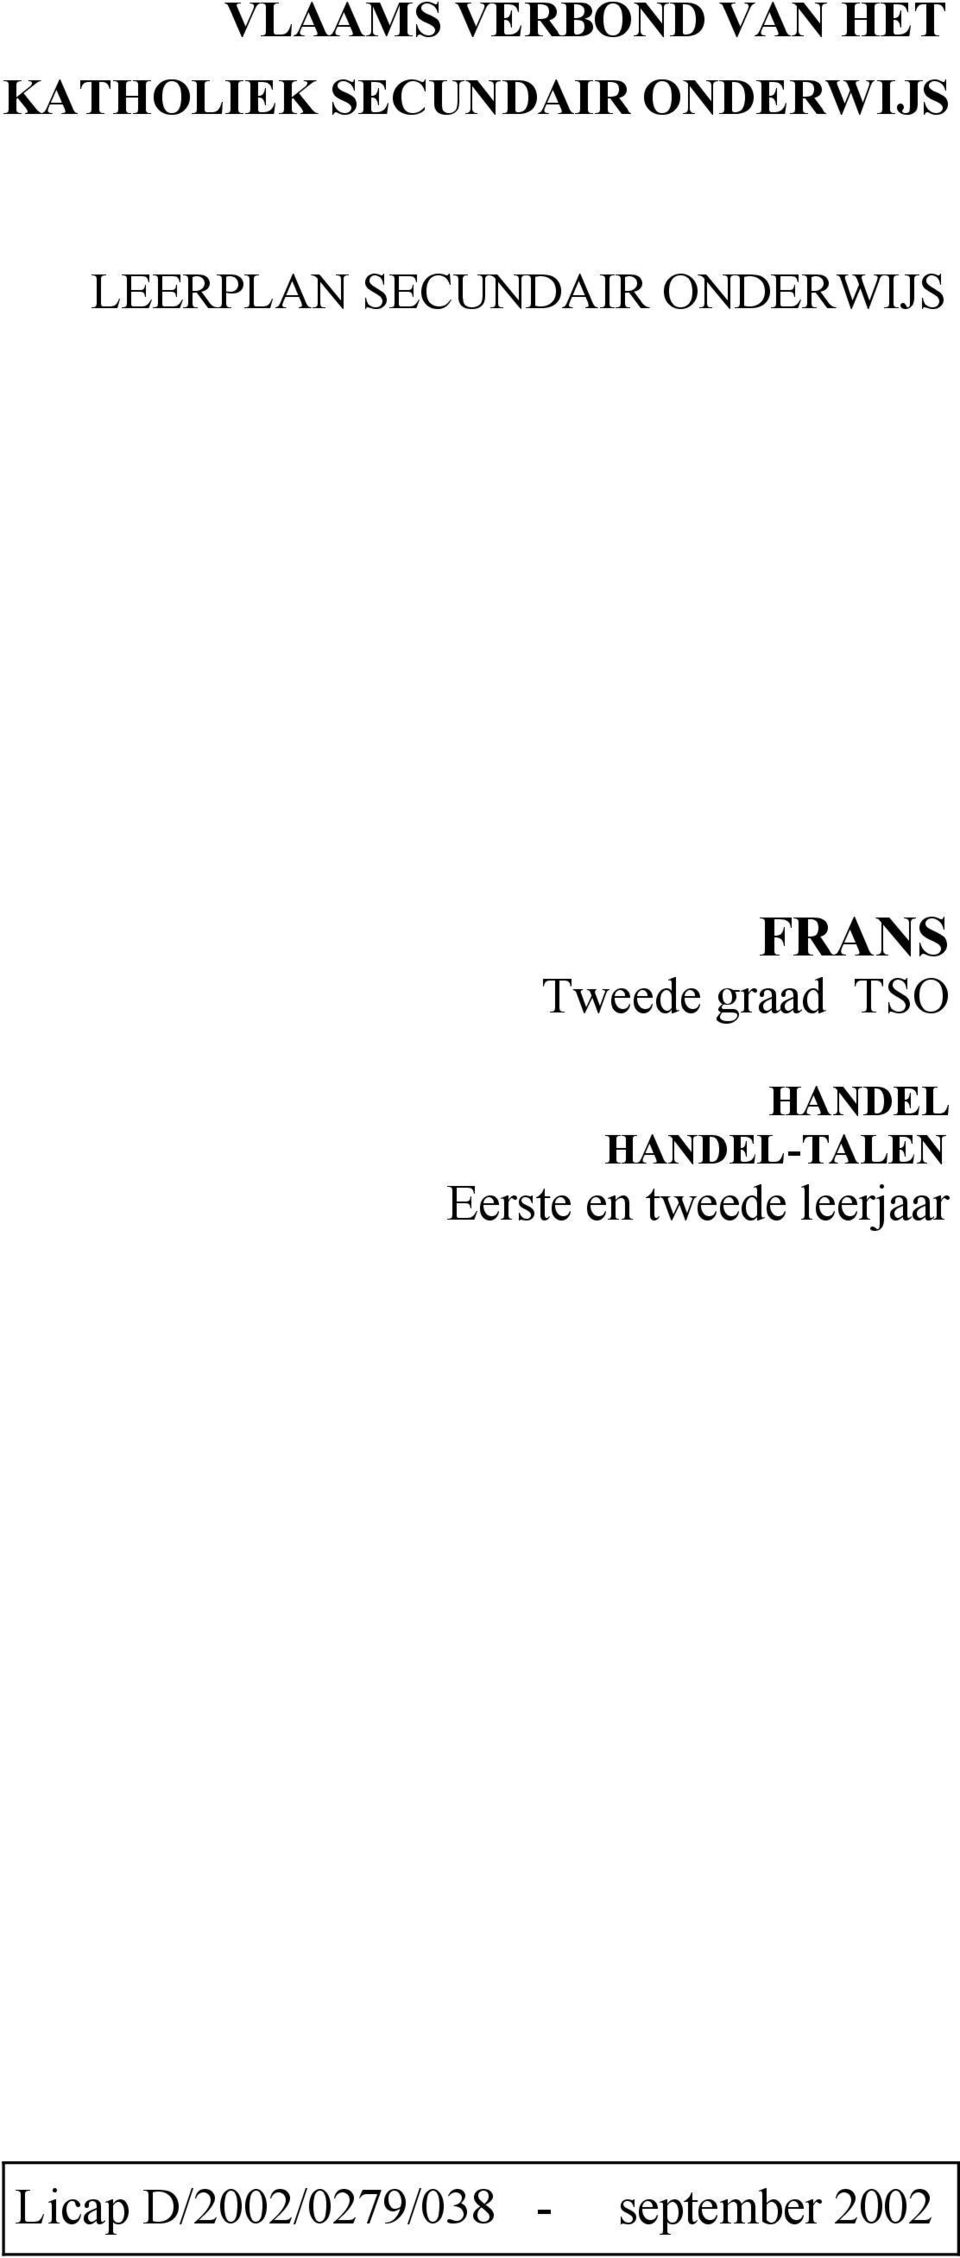 FRANS Tweede graad TSO HANDEL HANDEL-TALEN